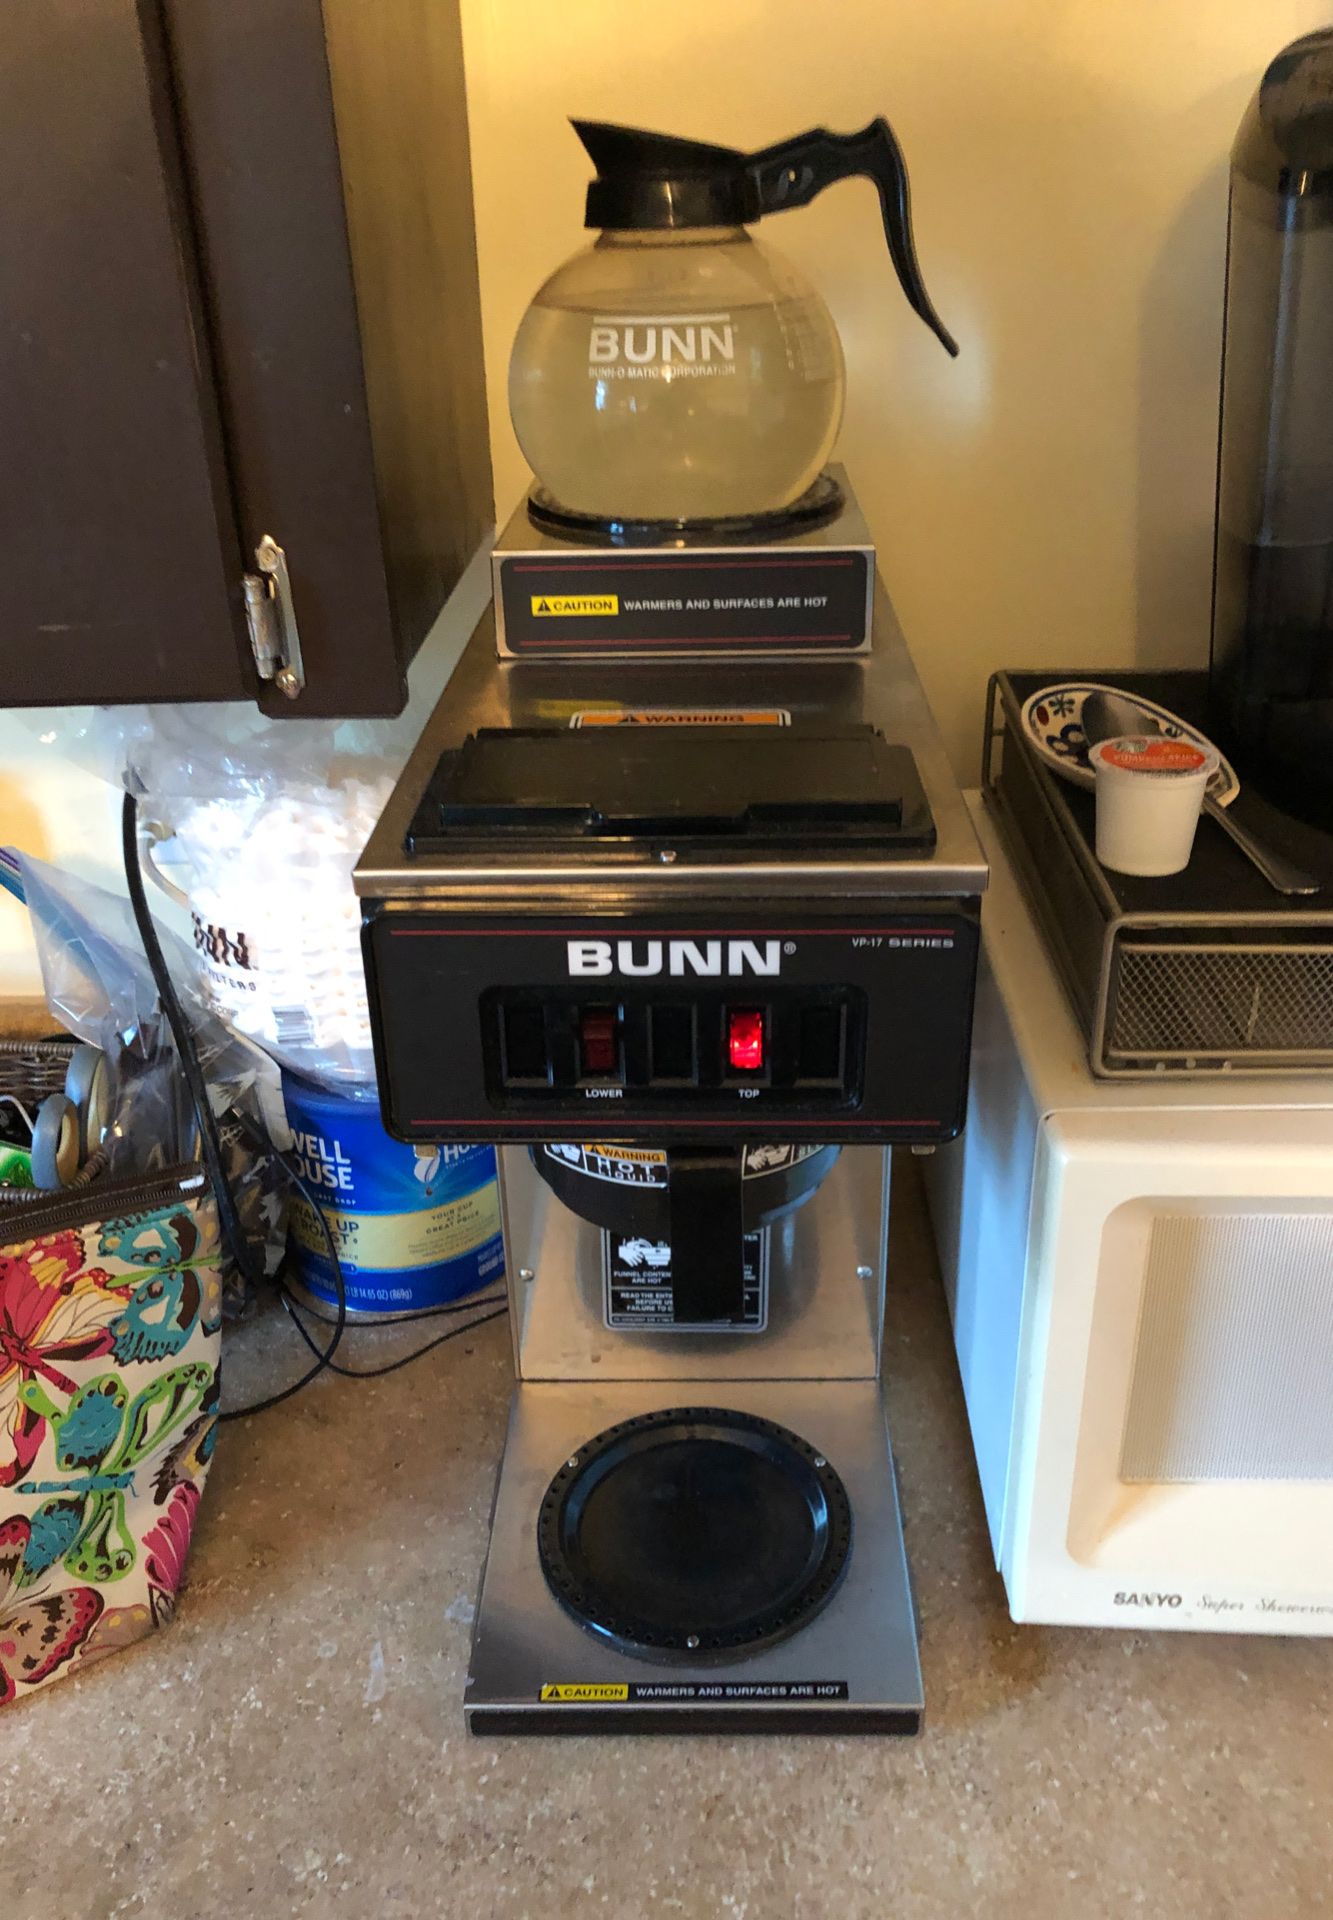 Bunn VP-17 pour over coffee maker